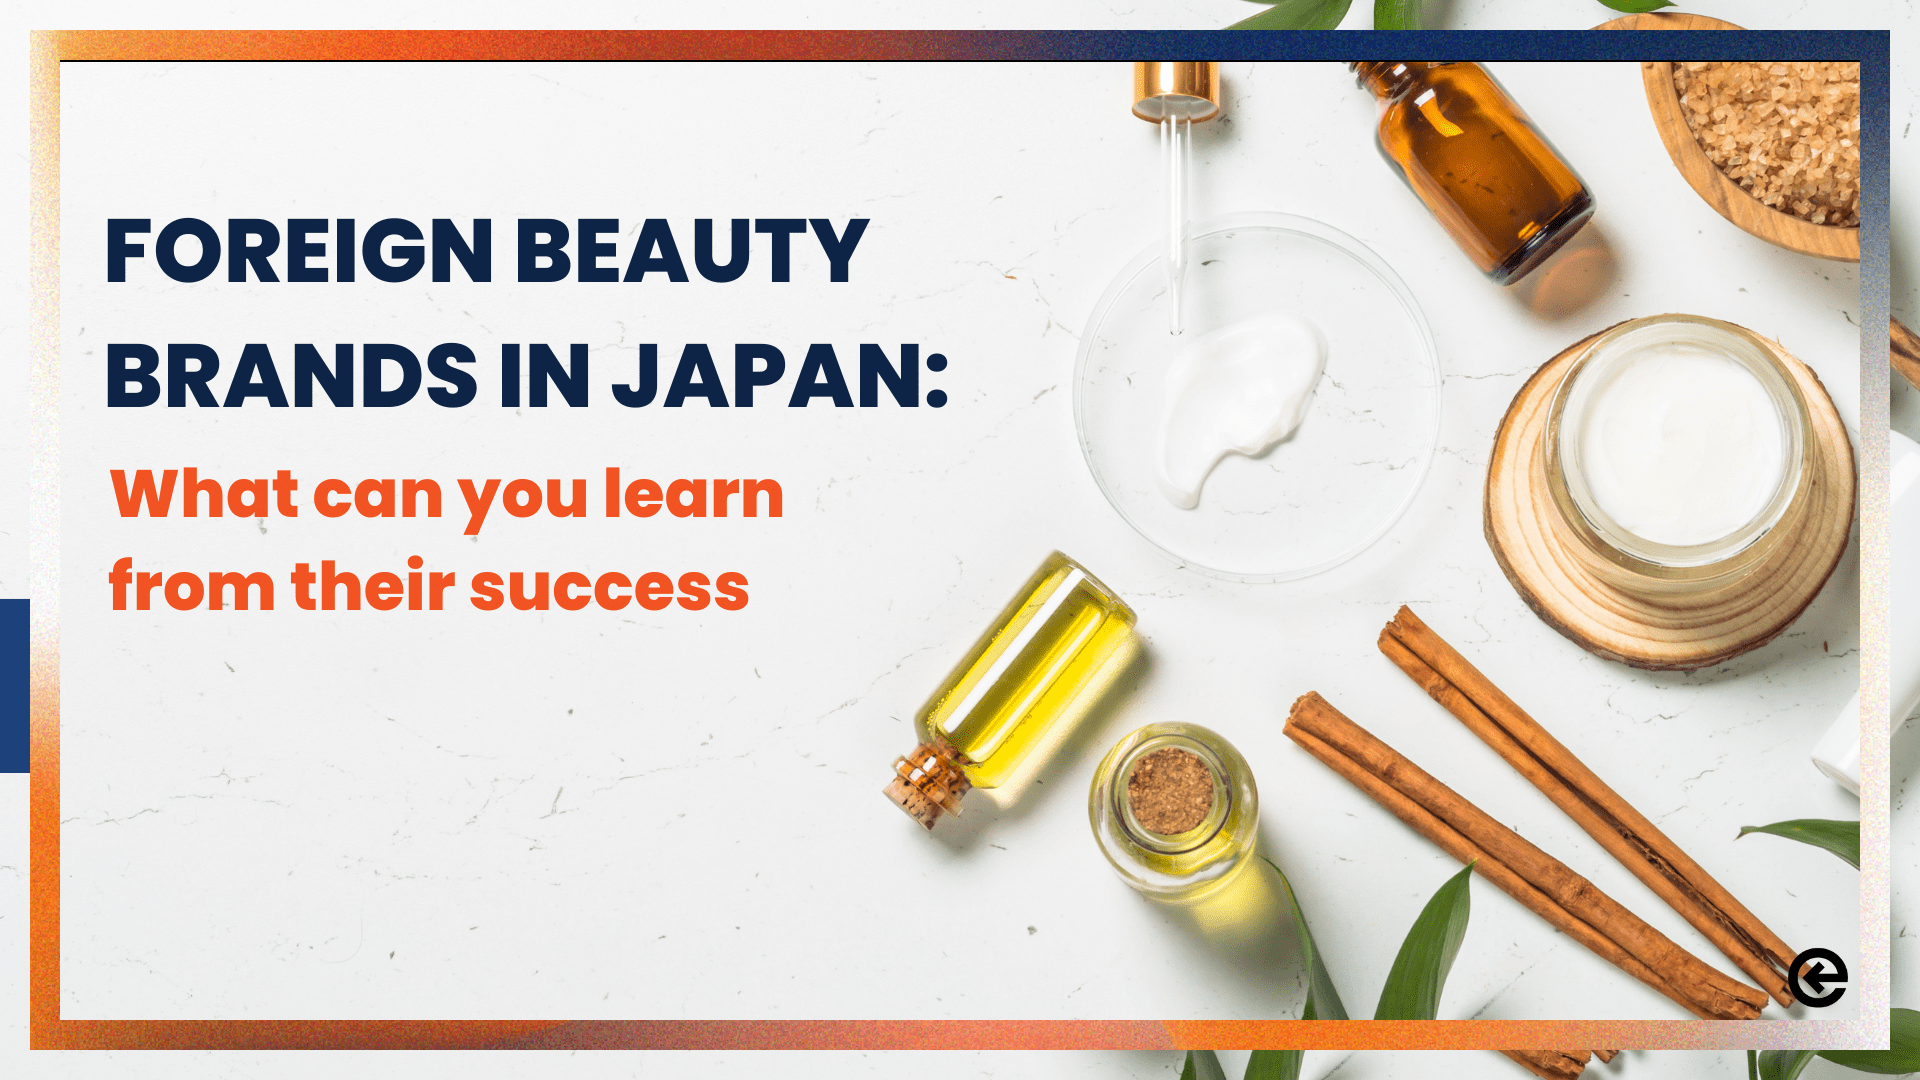 일본에 진출한 해외 뷰티 브랜드: 그들의 성공에서 배울 수 있는 것 